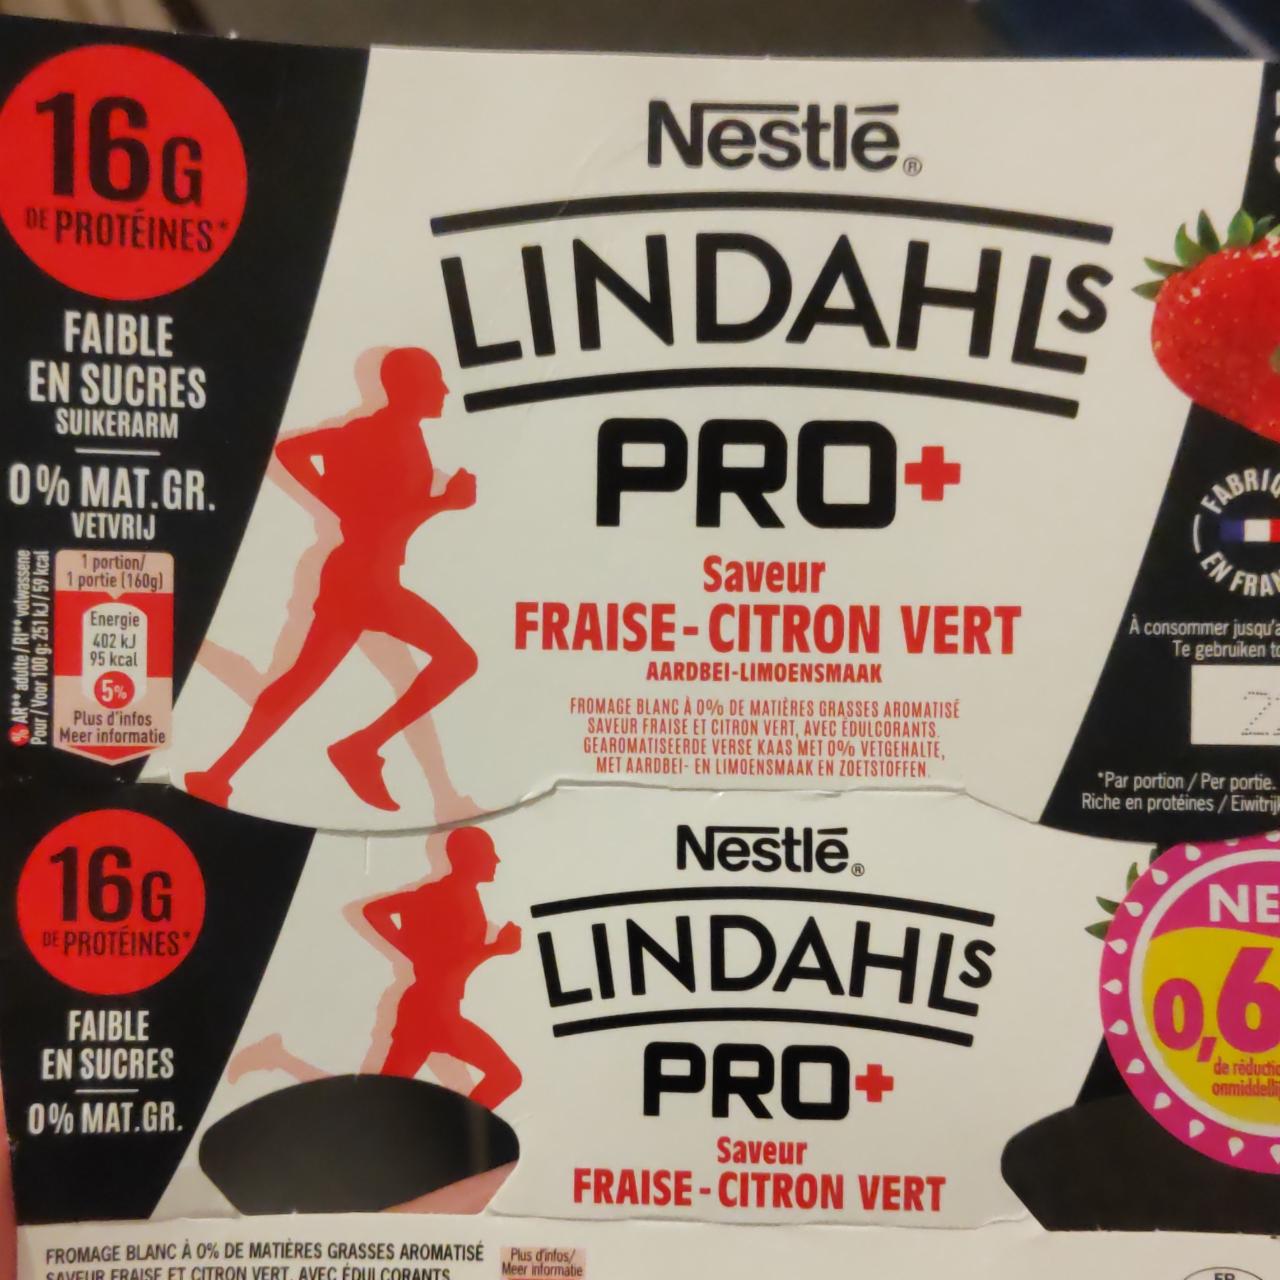 Fotografie - Lindahls Pro+ Fraise-Citron Vert Nestlé